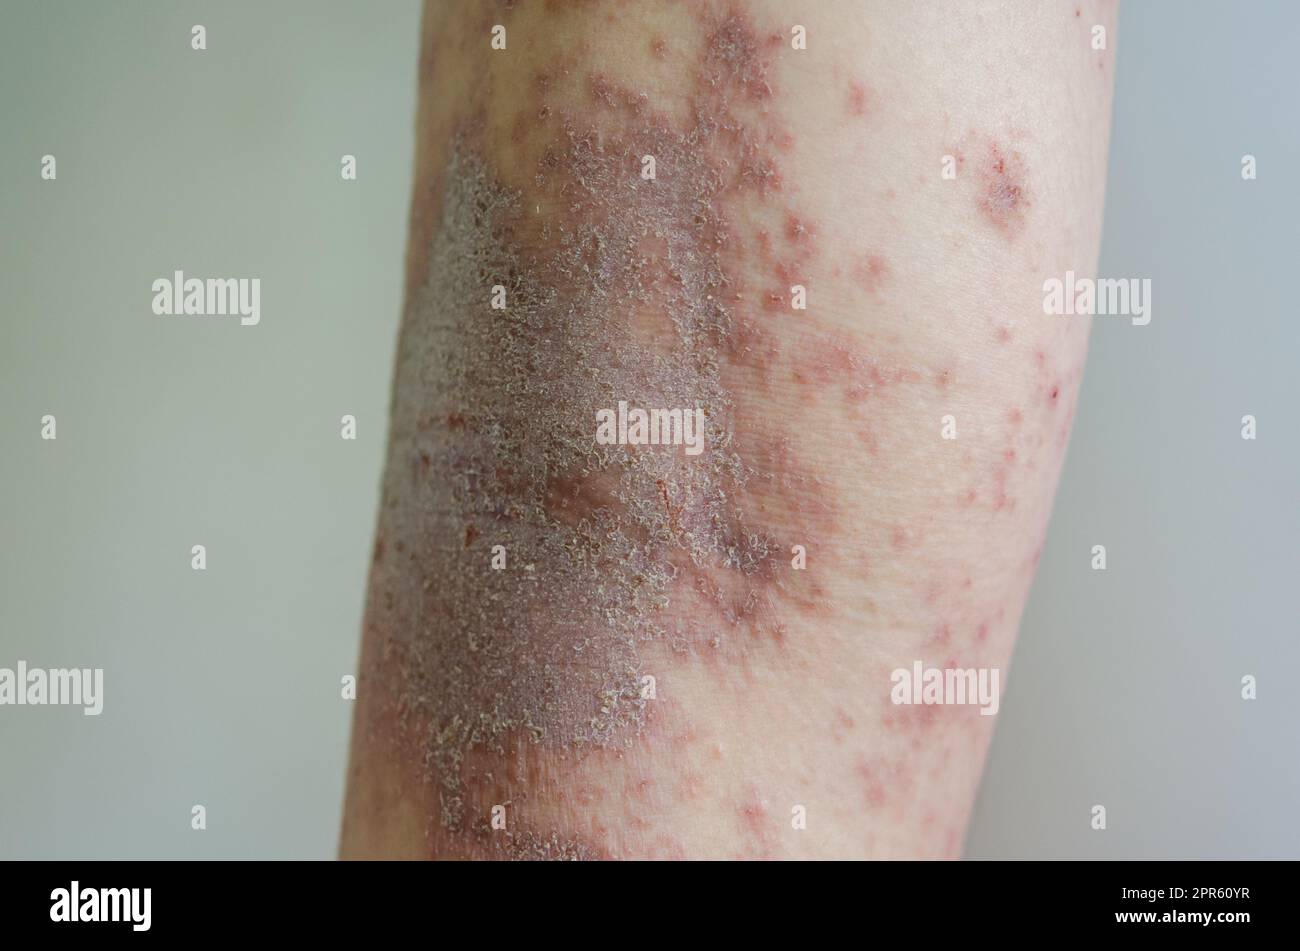 Eruzione cutanea rossa ragazza malattia della pelle causata da allergie a farmaci, cibo, prodotti chimici, sistema immunitario povero nella linfa. Foto Stock